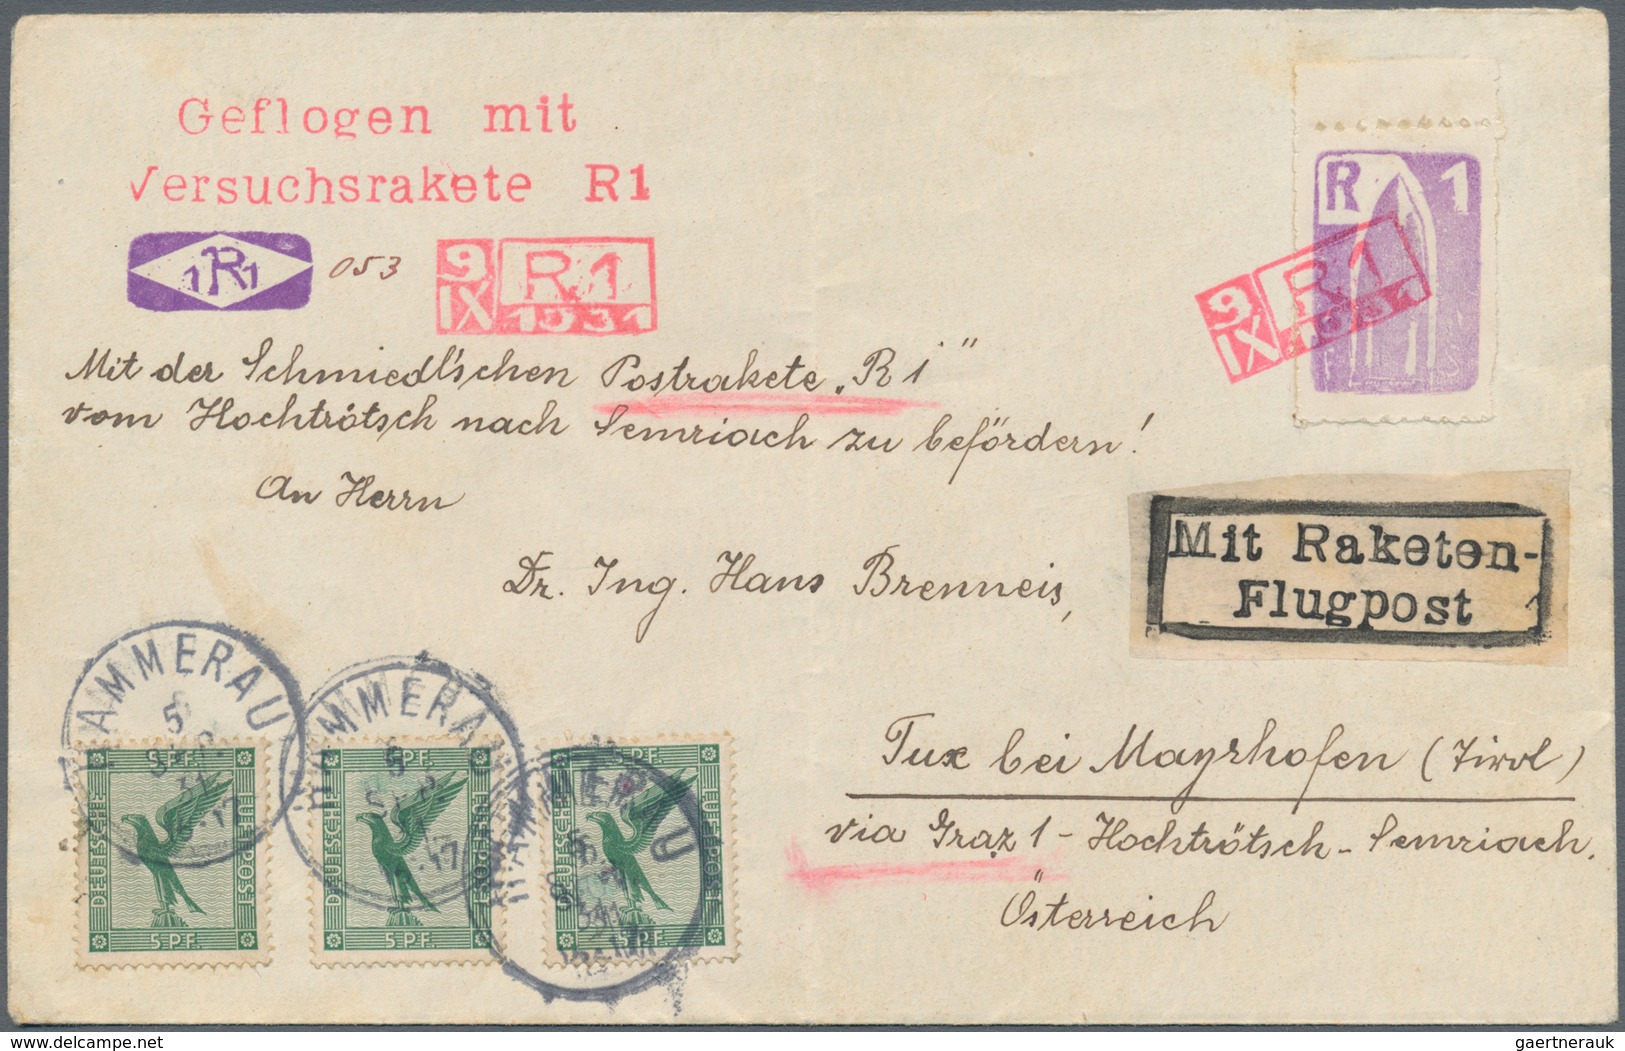 00631 Raketenpost: Friedrich Schmiedl Friedrich Schmiedl was born on 14.05.1902 in Schwertberg in Upper Au